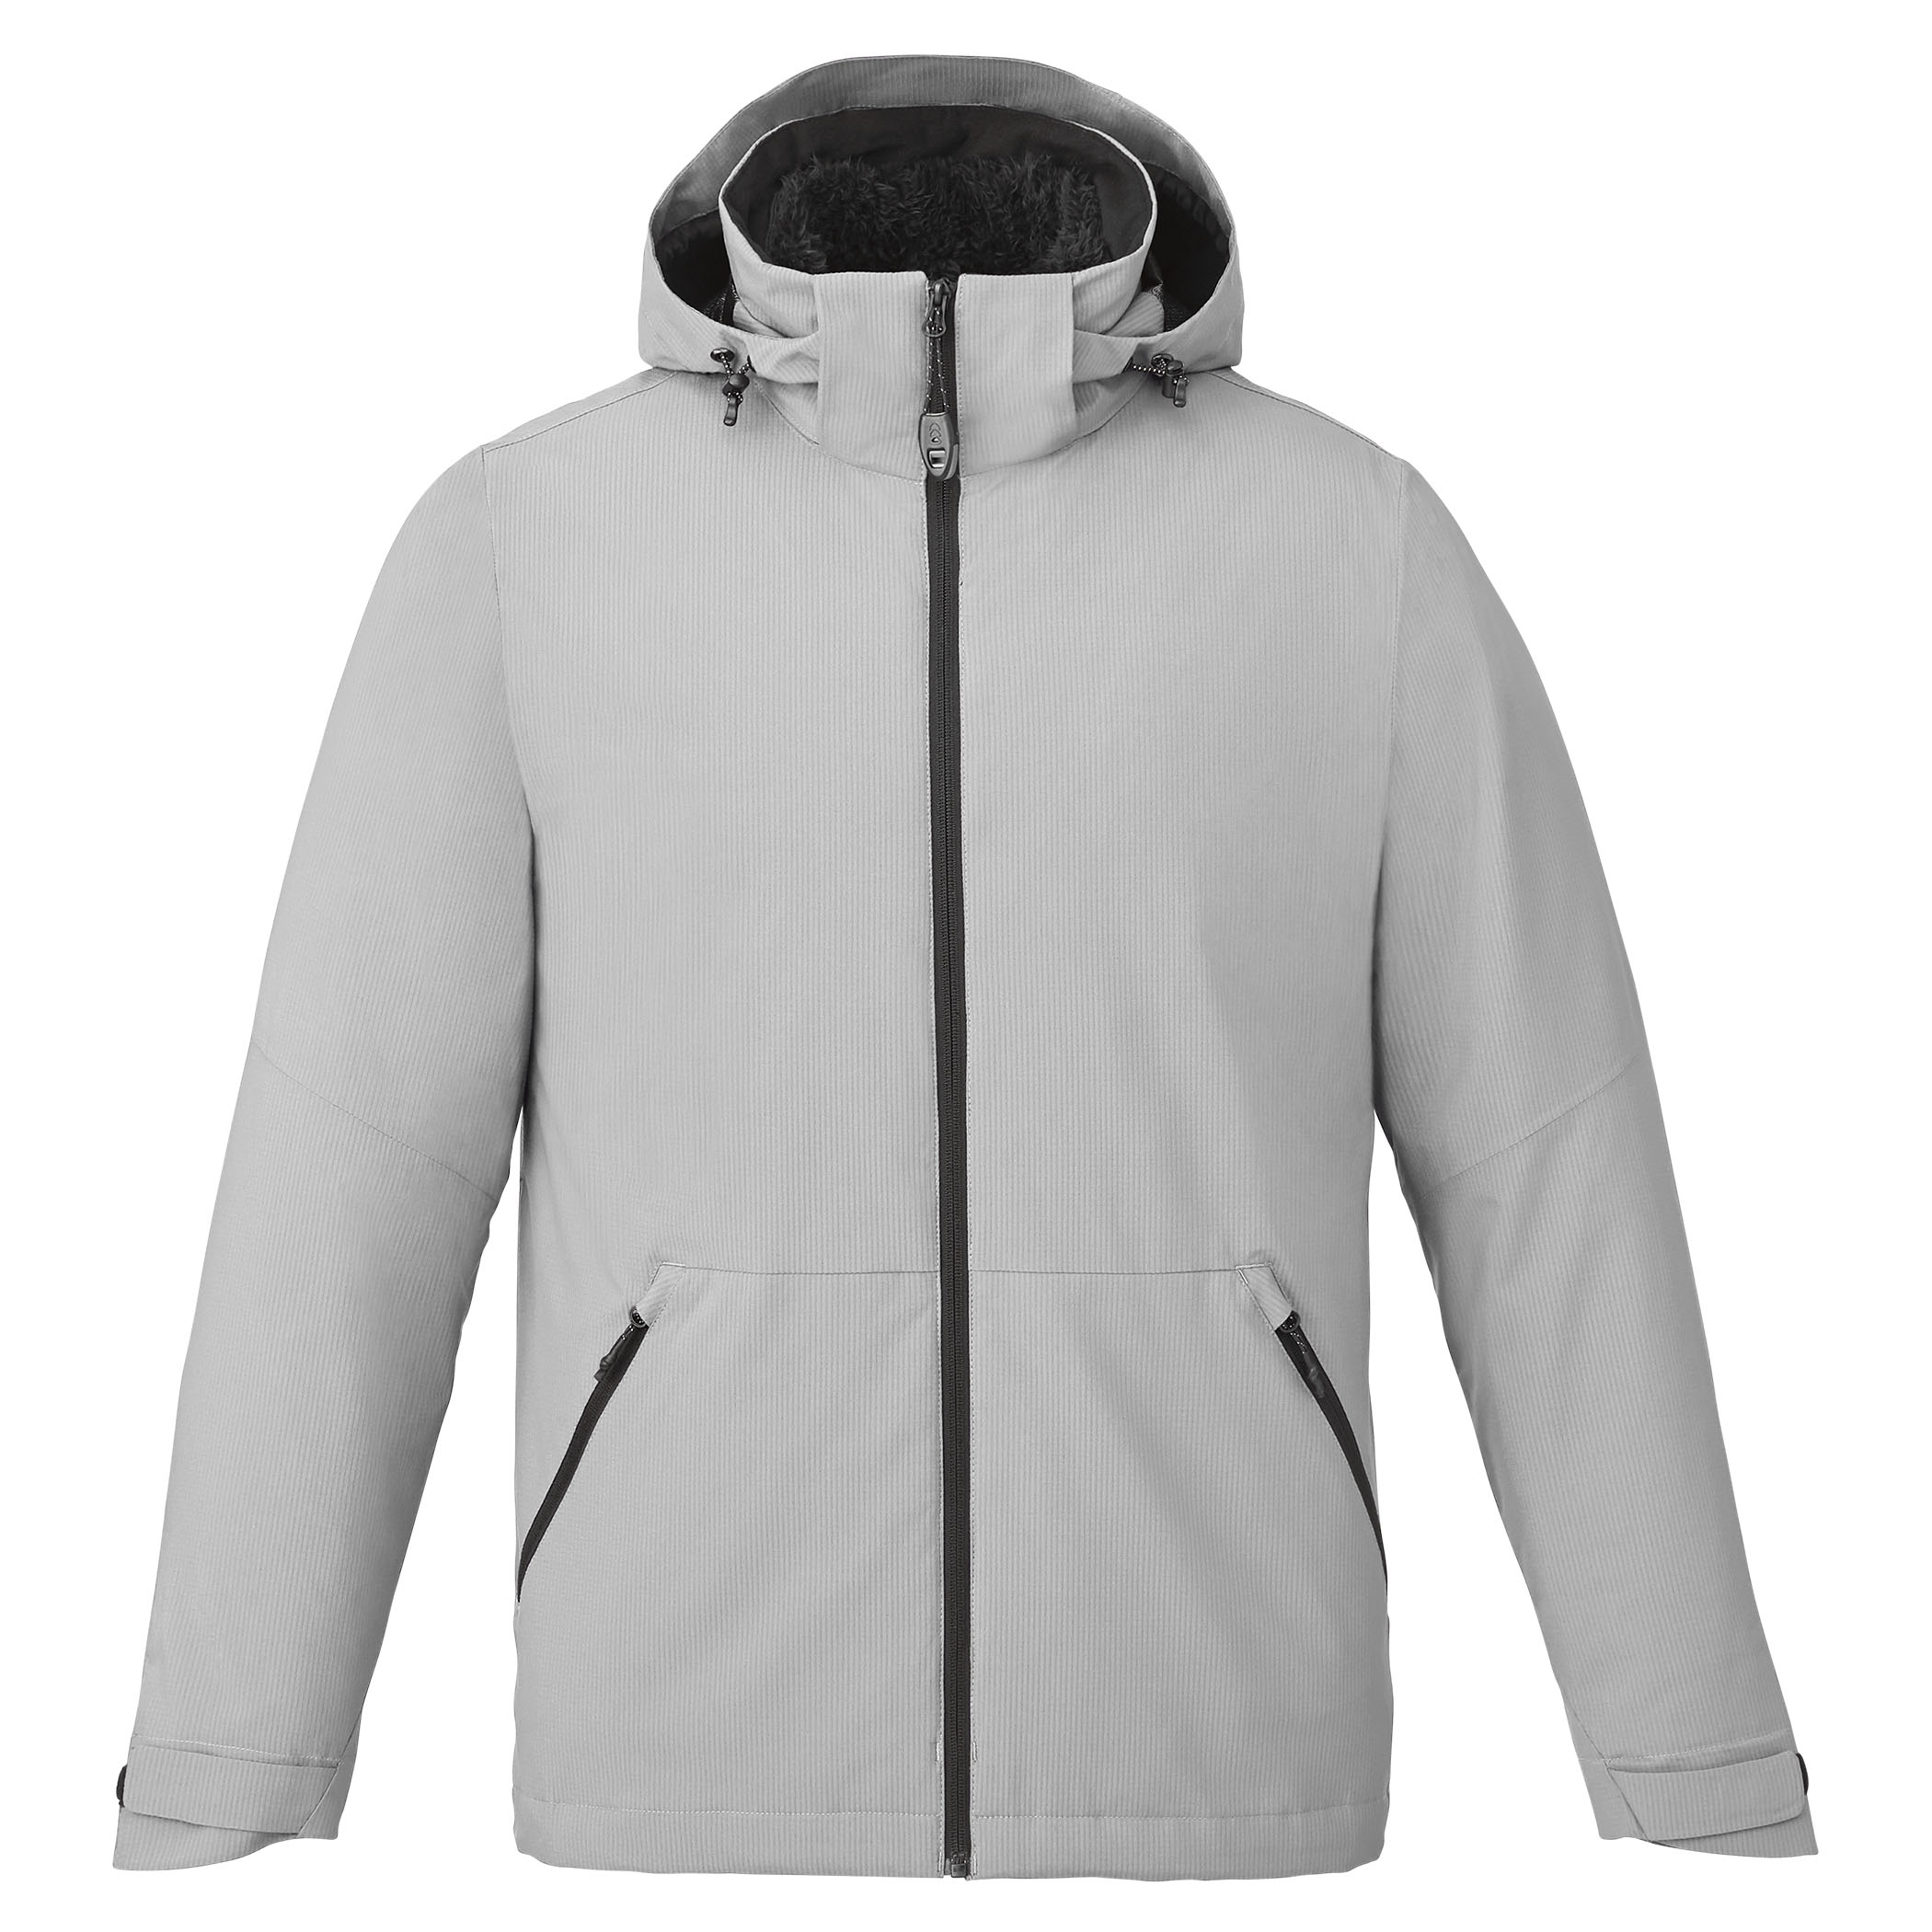 M-ZERMATT 3-in-1 Jacket | Trimark Sportswear